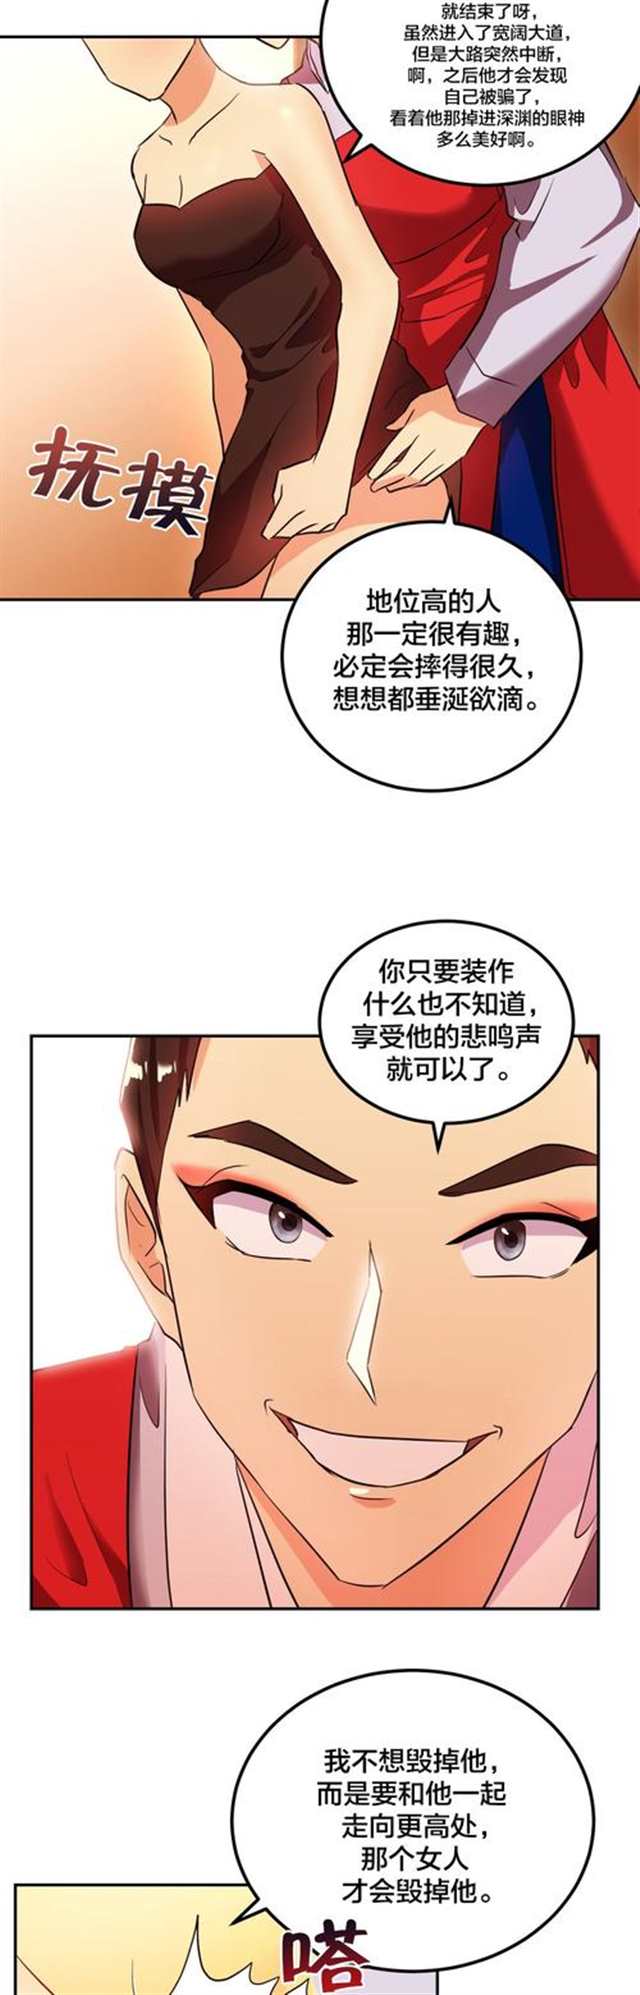 热门漫画恋爱韩漫:剩女三十三(又名:单身绯闻)